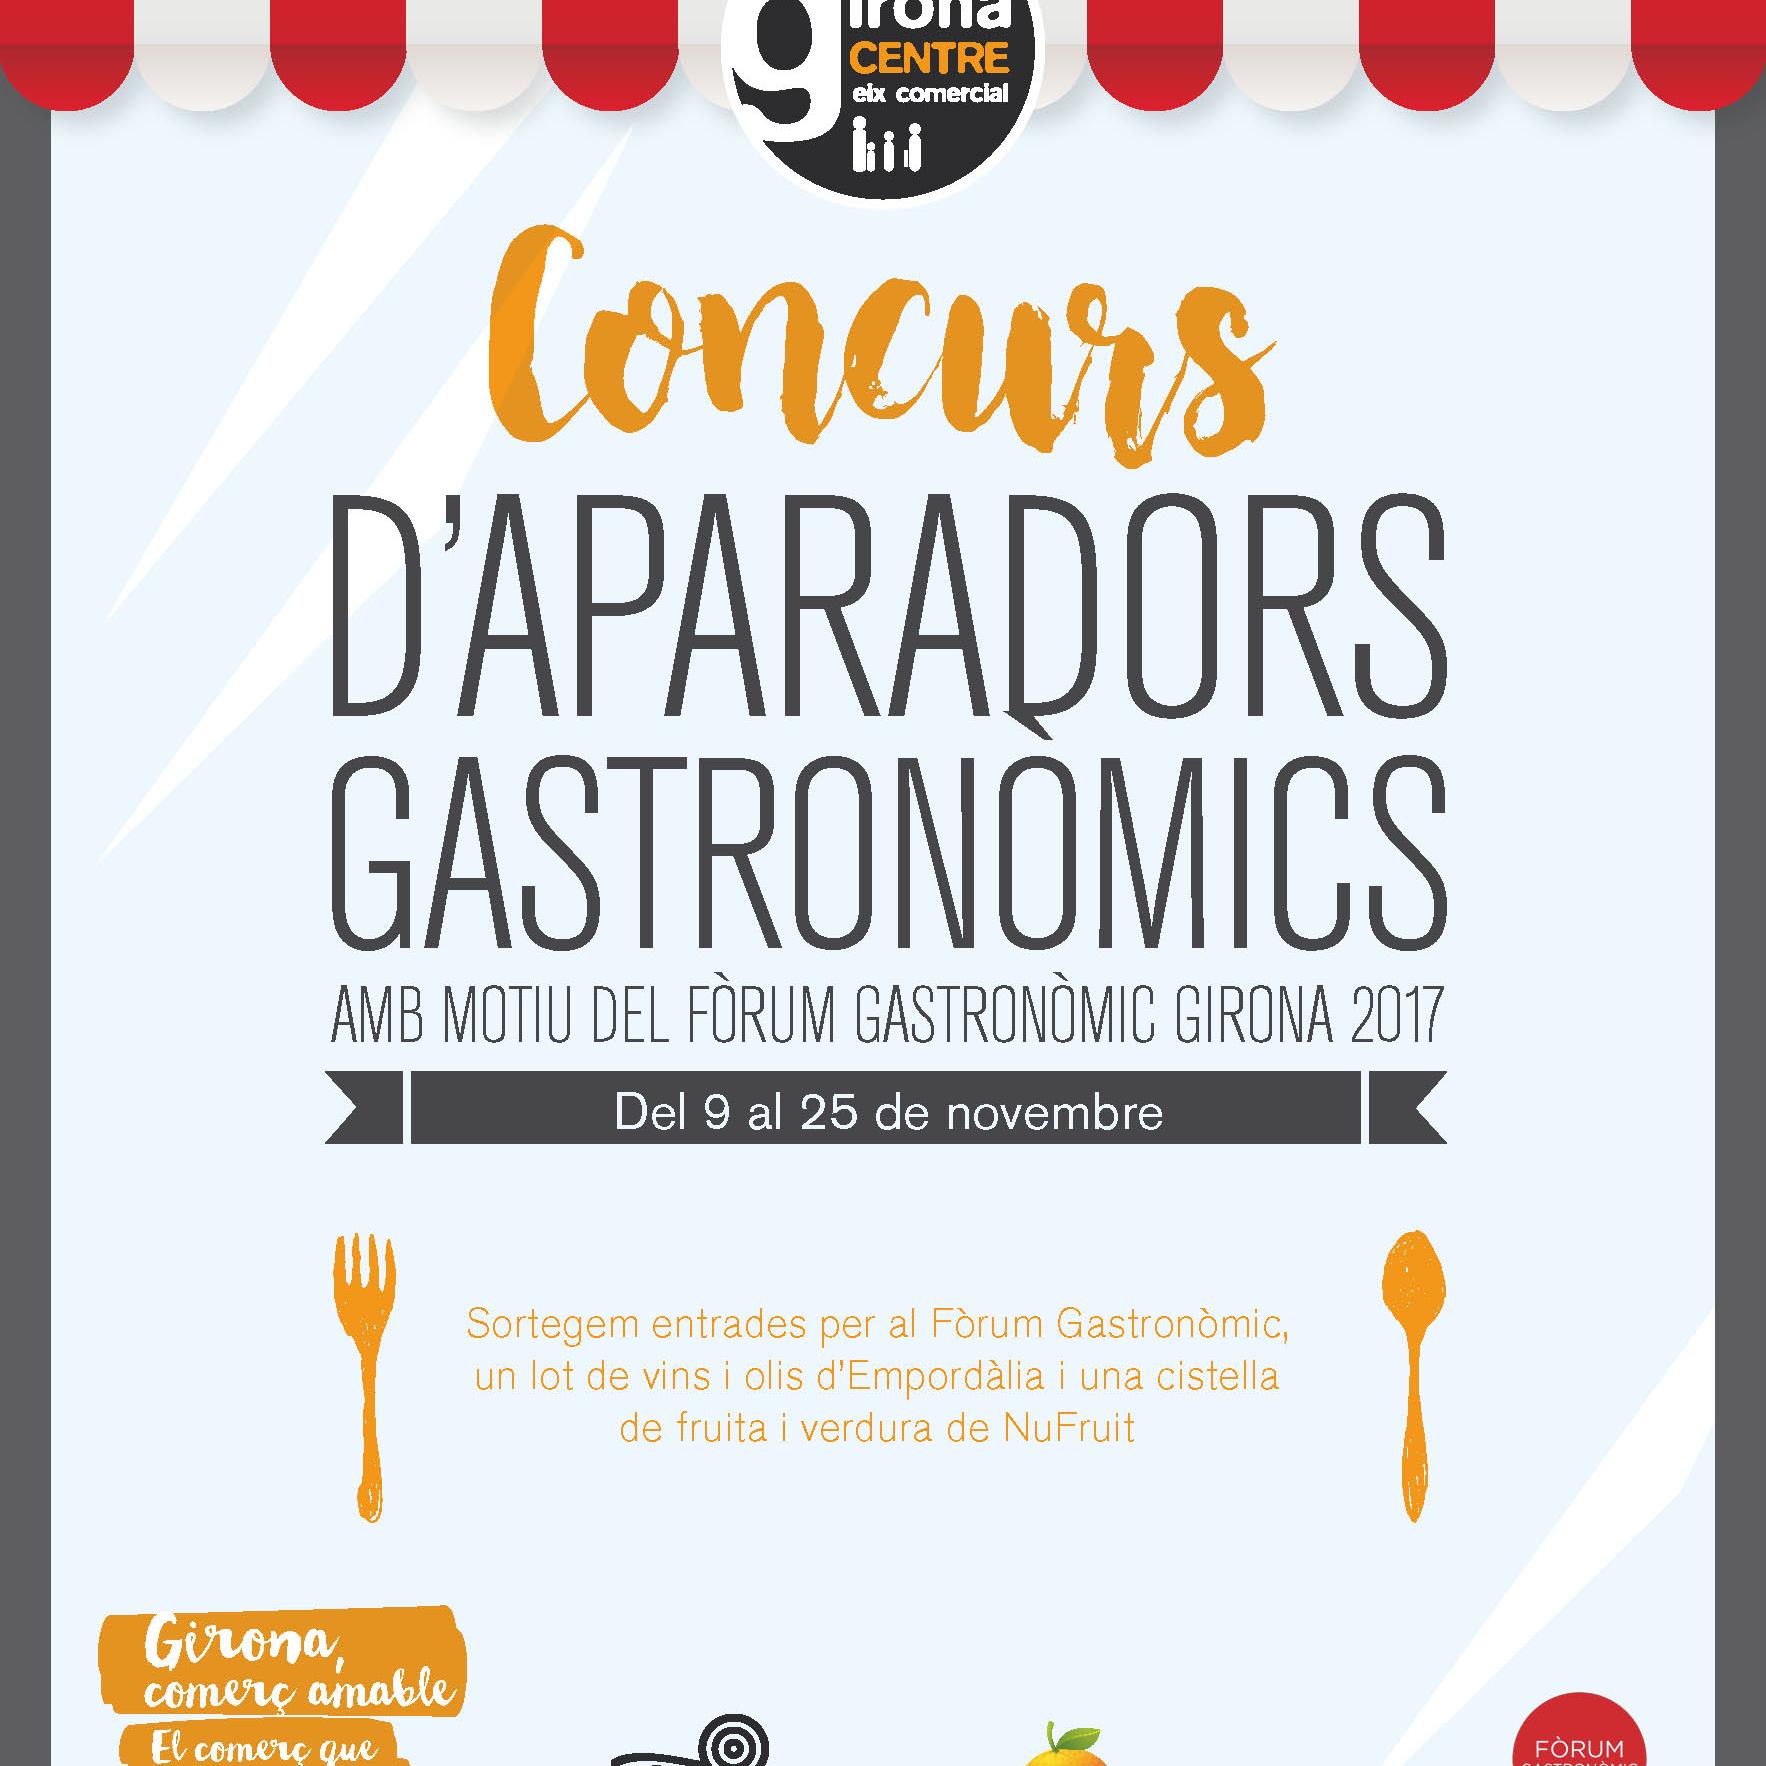 Mostra d’aparadors gastronòmics al comerç local de Girona